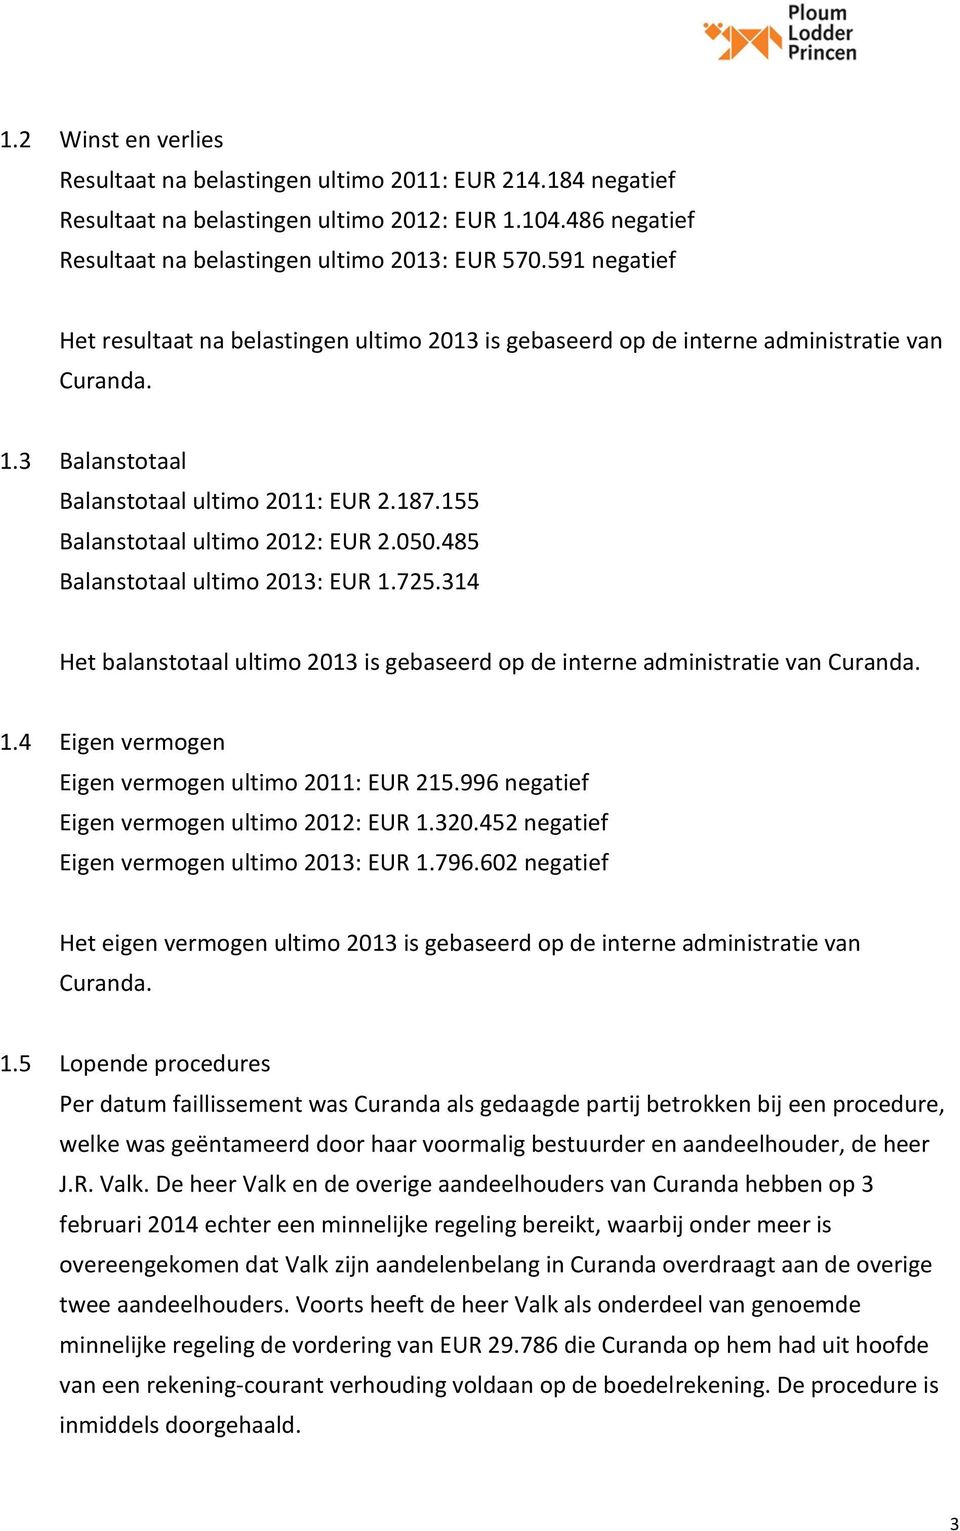 050.485 Balanstotaal ultimo 2013: EUR 1.725.314 Het balanstotaal ultimo 2013 is gebaseerd op de interne administratie van Curanda. 1.4 Eigen vermogen Eigen vermogen ultimo 2011: EUR 215.